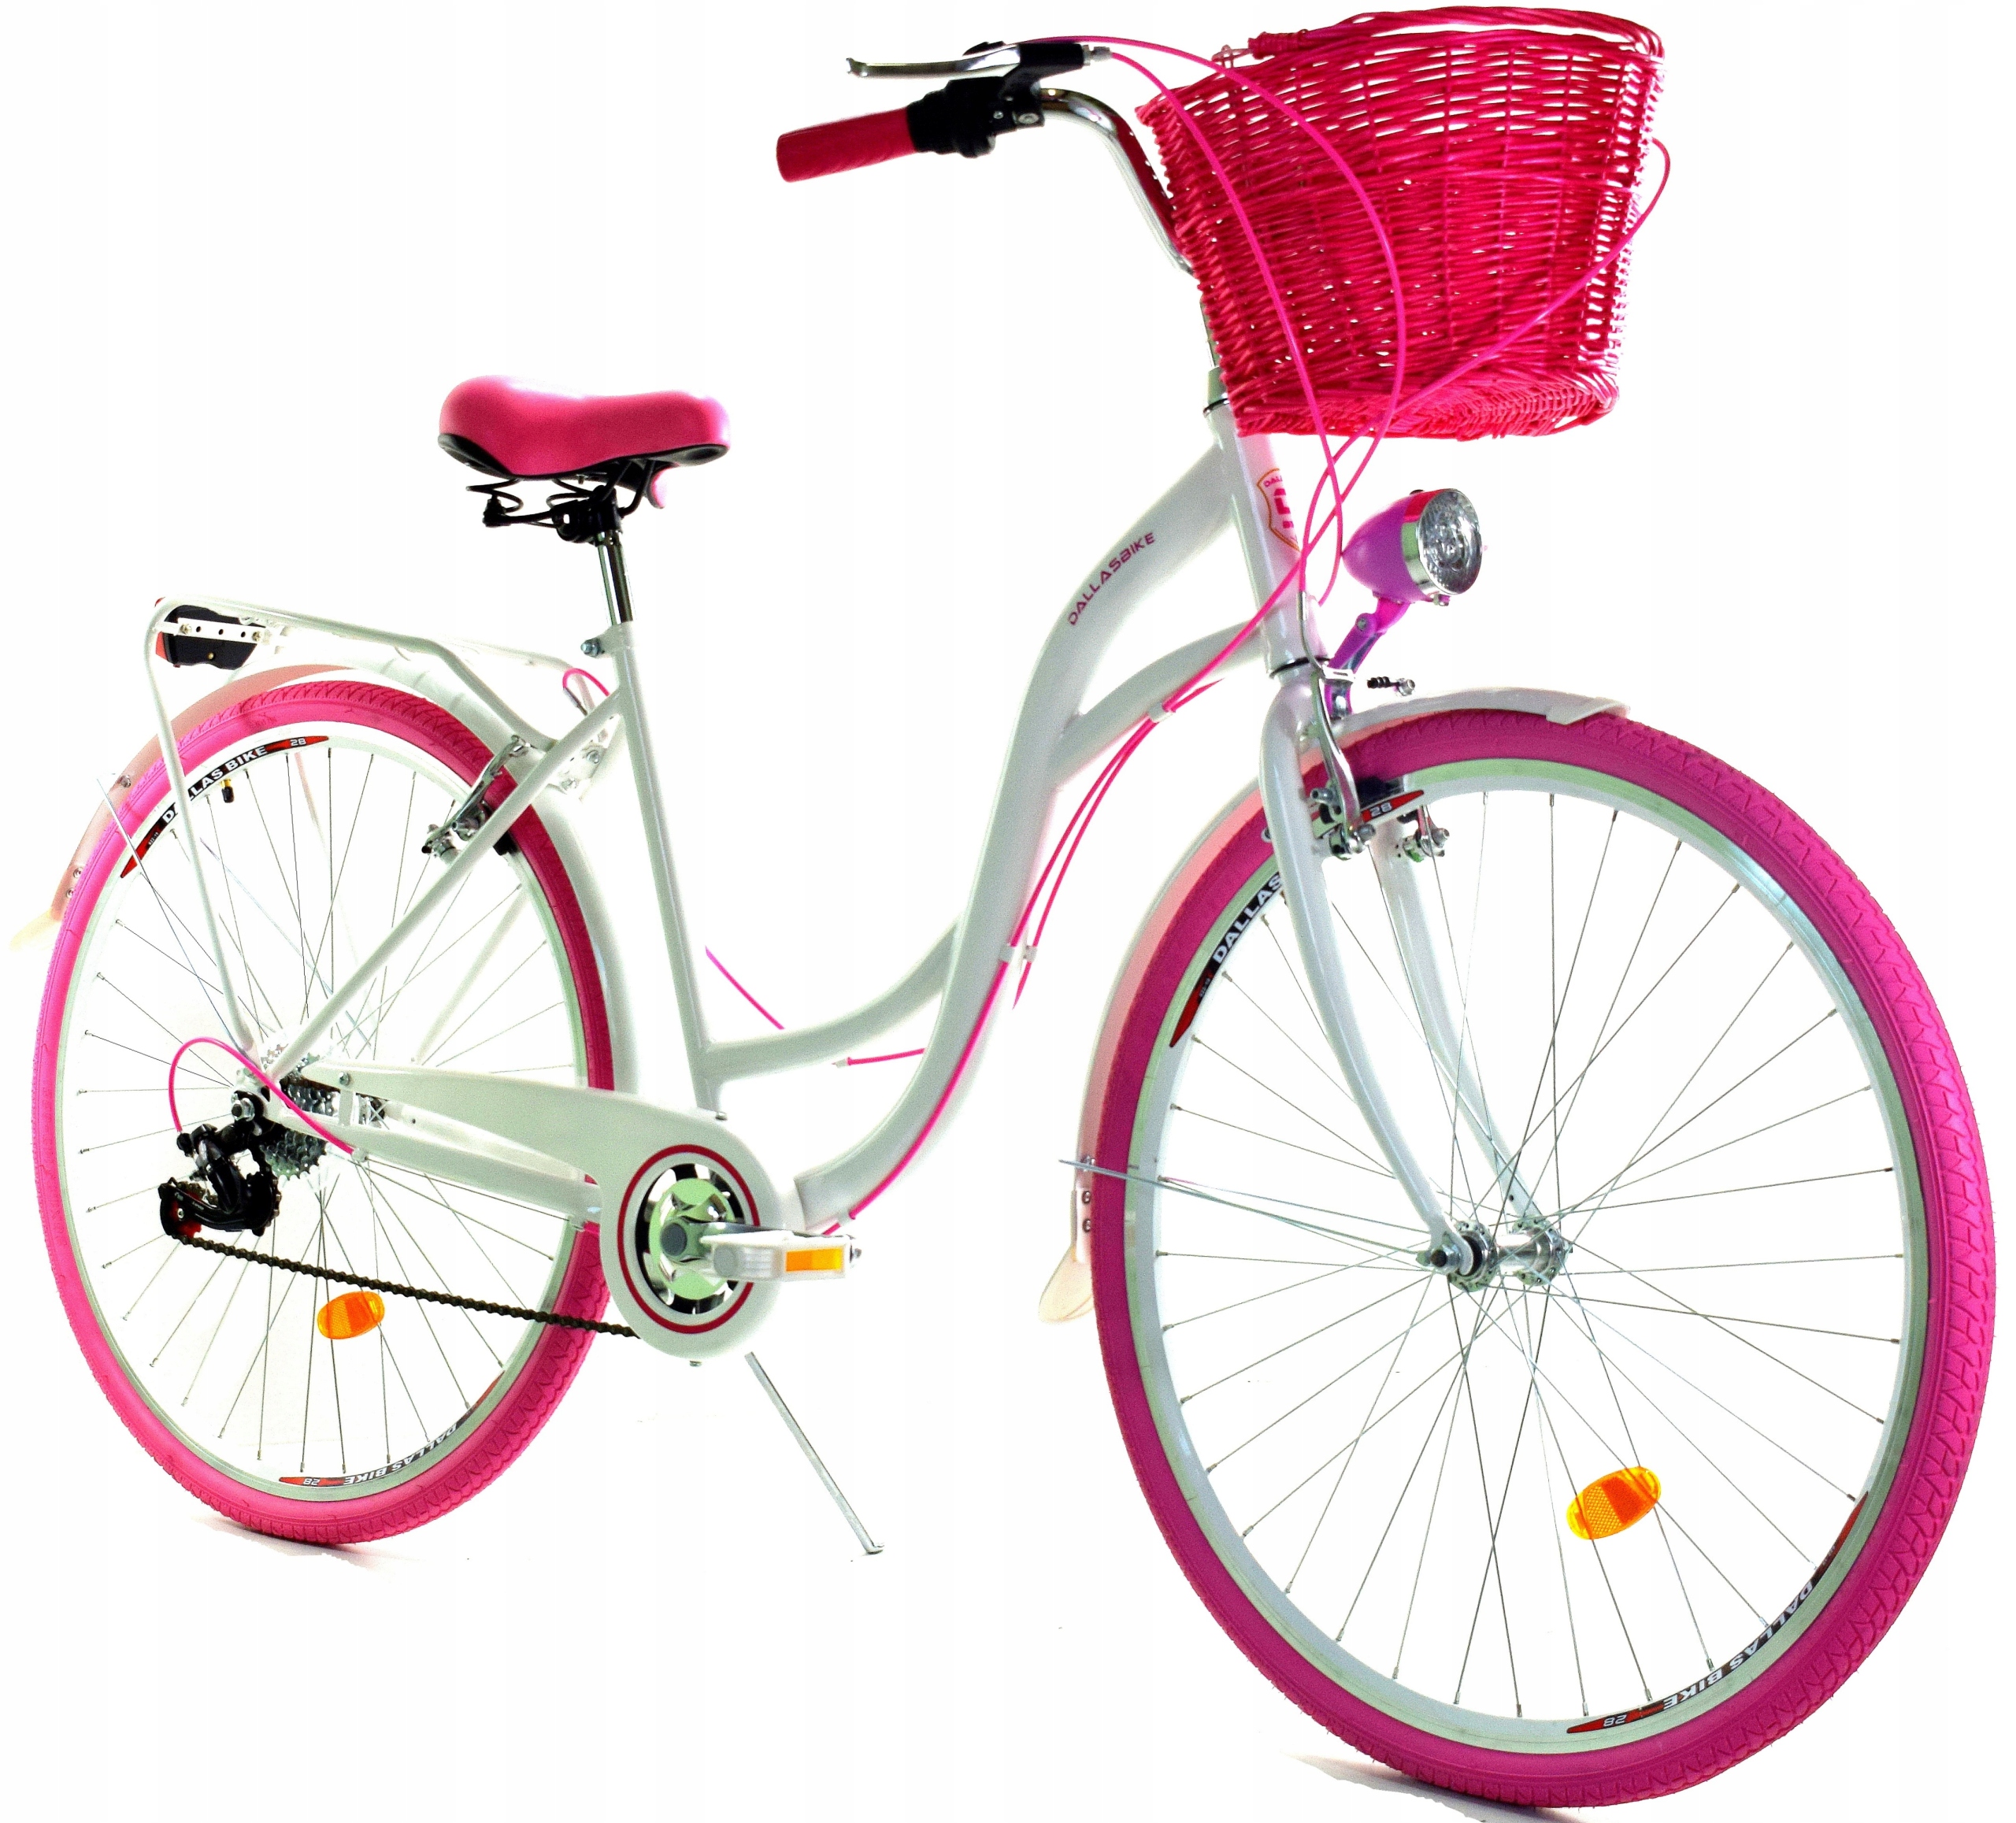 Адреса где можно купить велосипед. Велосипед женский Mint 26 damka. Городской велосипед Alice 28. Городской велосипед Аист ck9-344. Даллас 28 городской велосипед 6 передач.